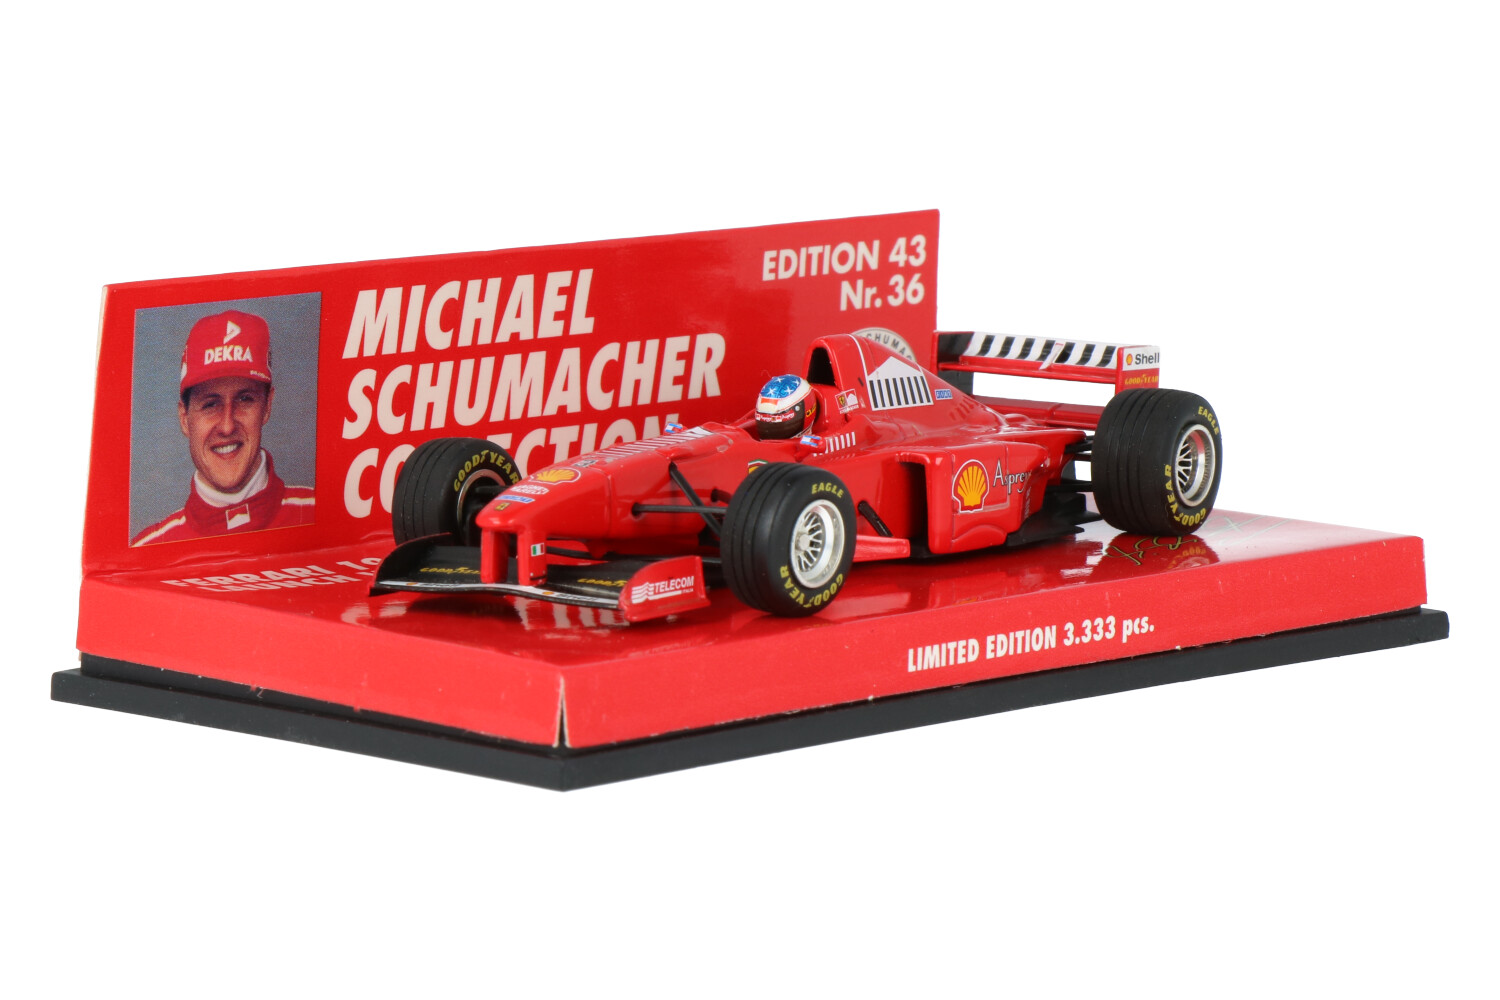 Ferrari-Launch-Version-Schumacher-510984393_63154012138026483Ferrari-Launch-Version-Schumacher-510984393_Houseofmodelcars_.jpg